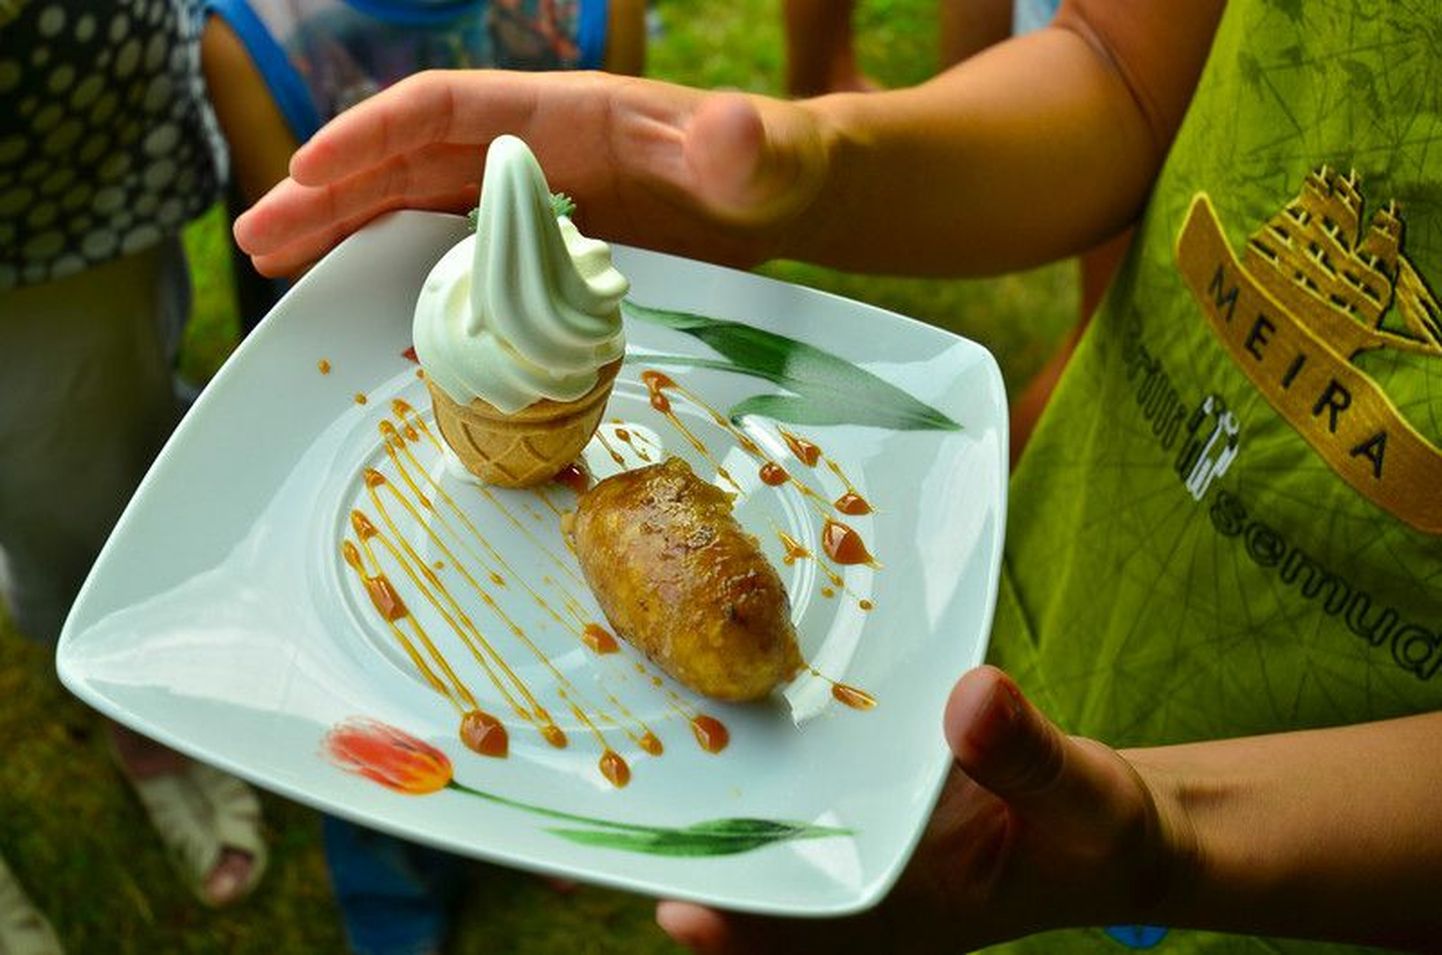 Võistkond Grillisemud fantaasiavooru võidutöö magusroog - Õuna-pirni-pähklivorst jäätise ja karamellikastmega.